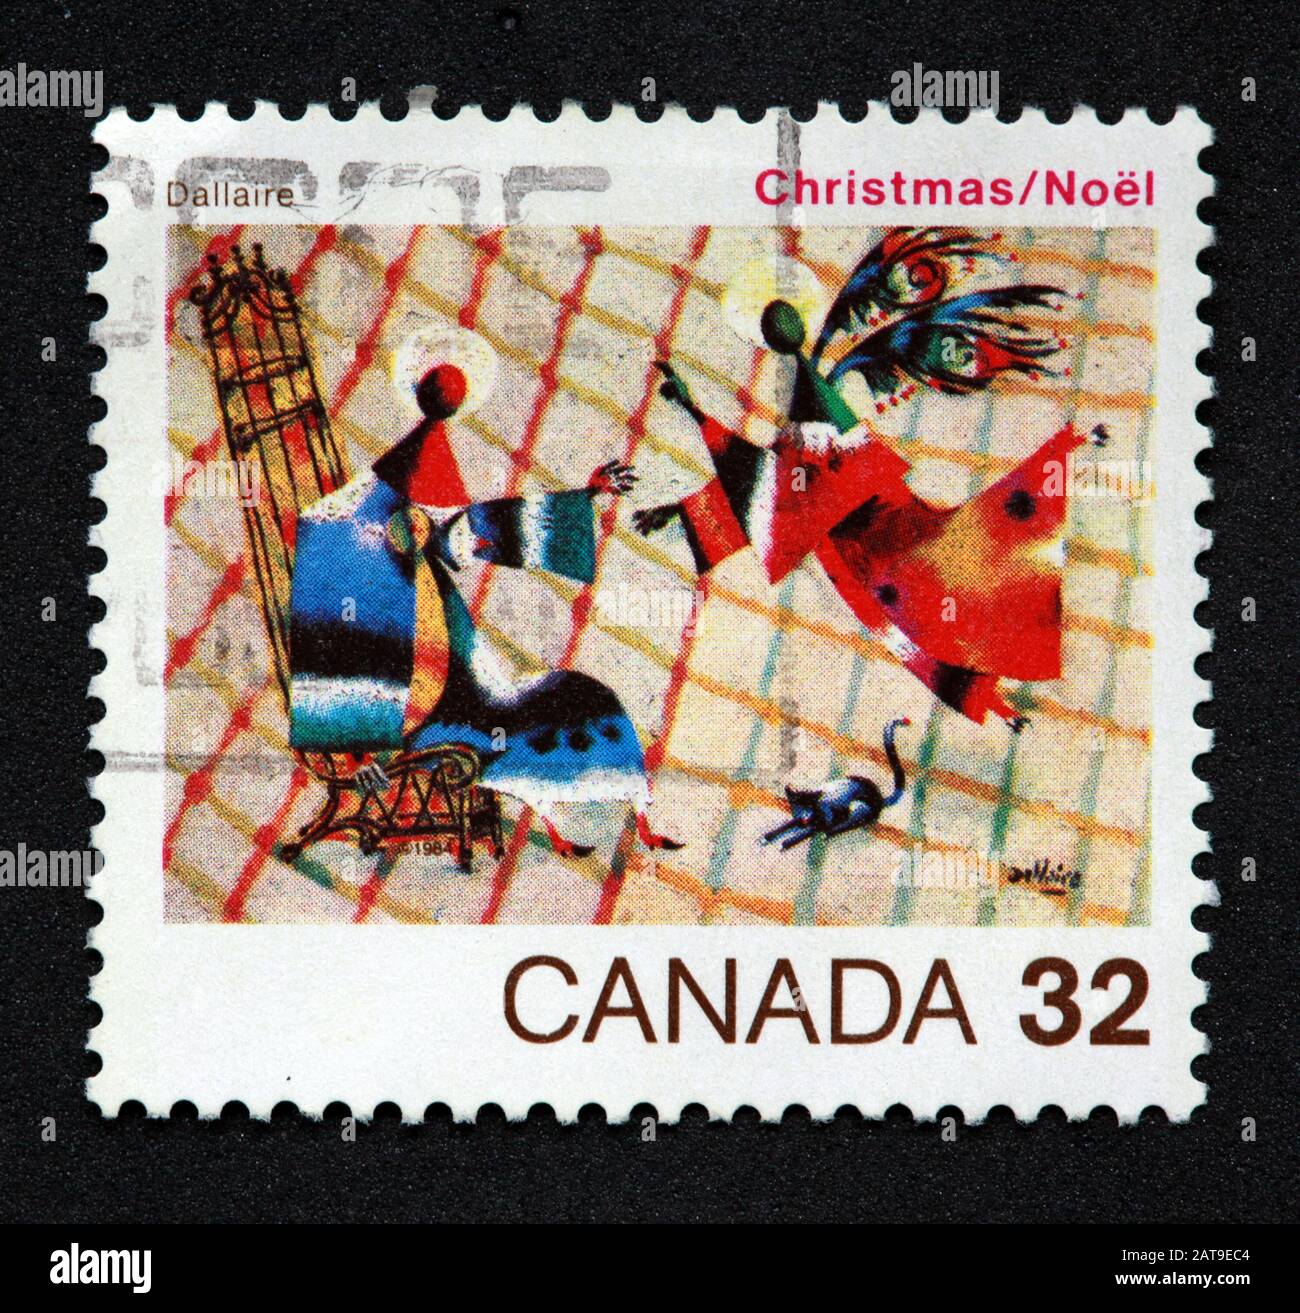 Timbre canadien, Timbre Canada, postes Canada, timbre utilisé, Canada 32, Noël , Noel, Dallaire , anges Banque D'Images